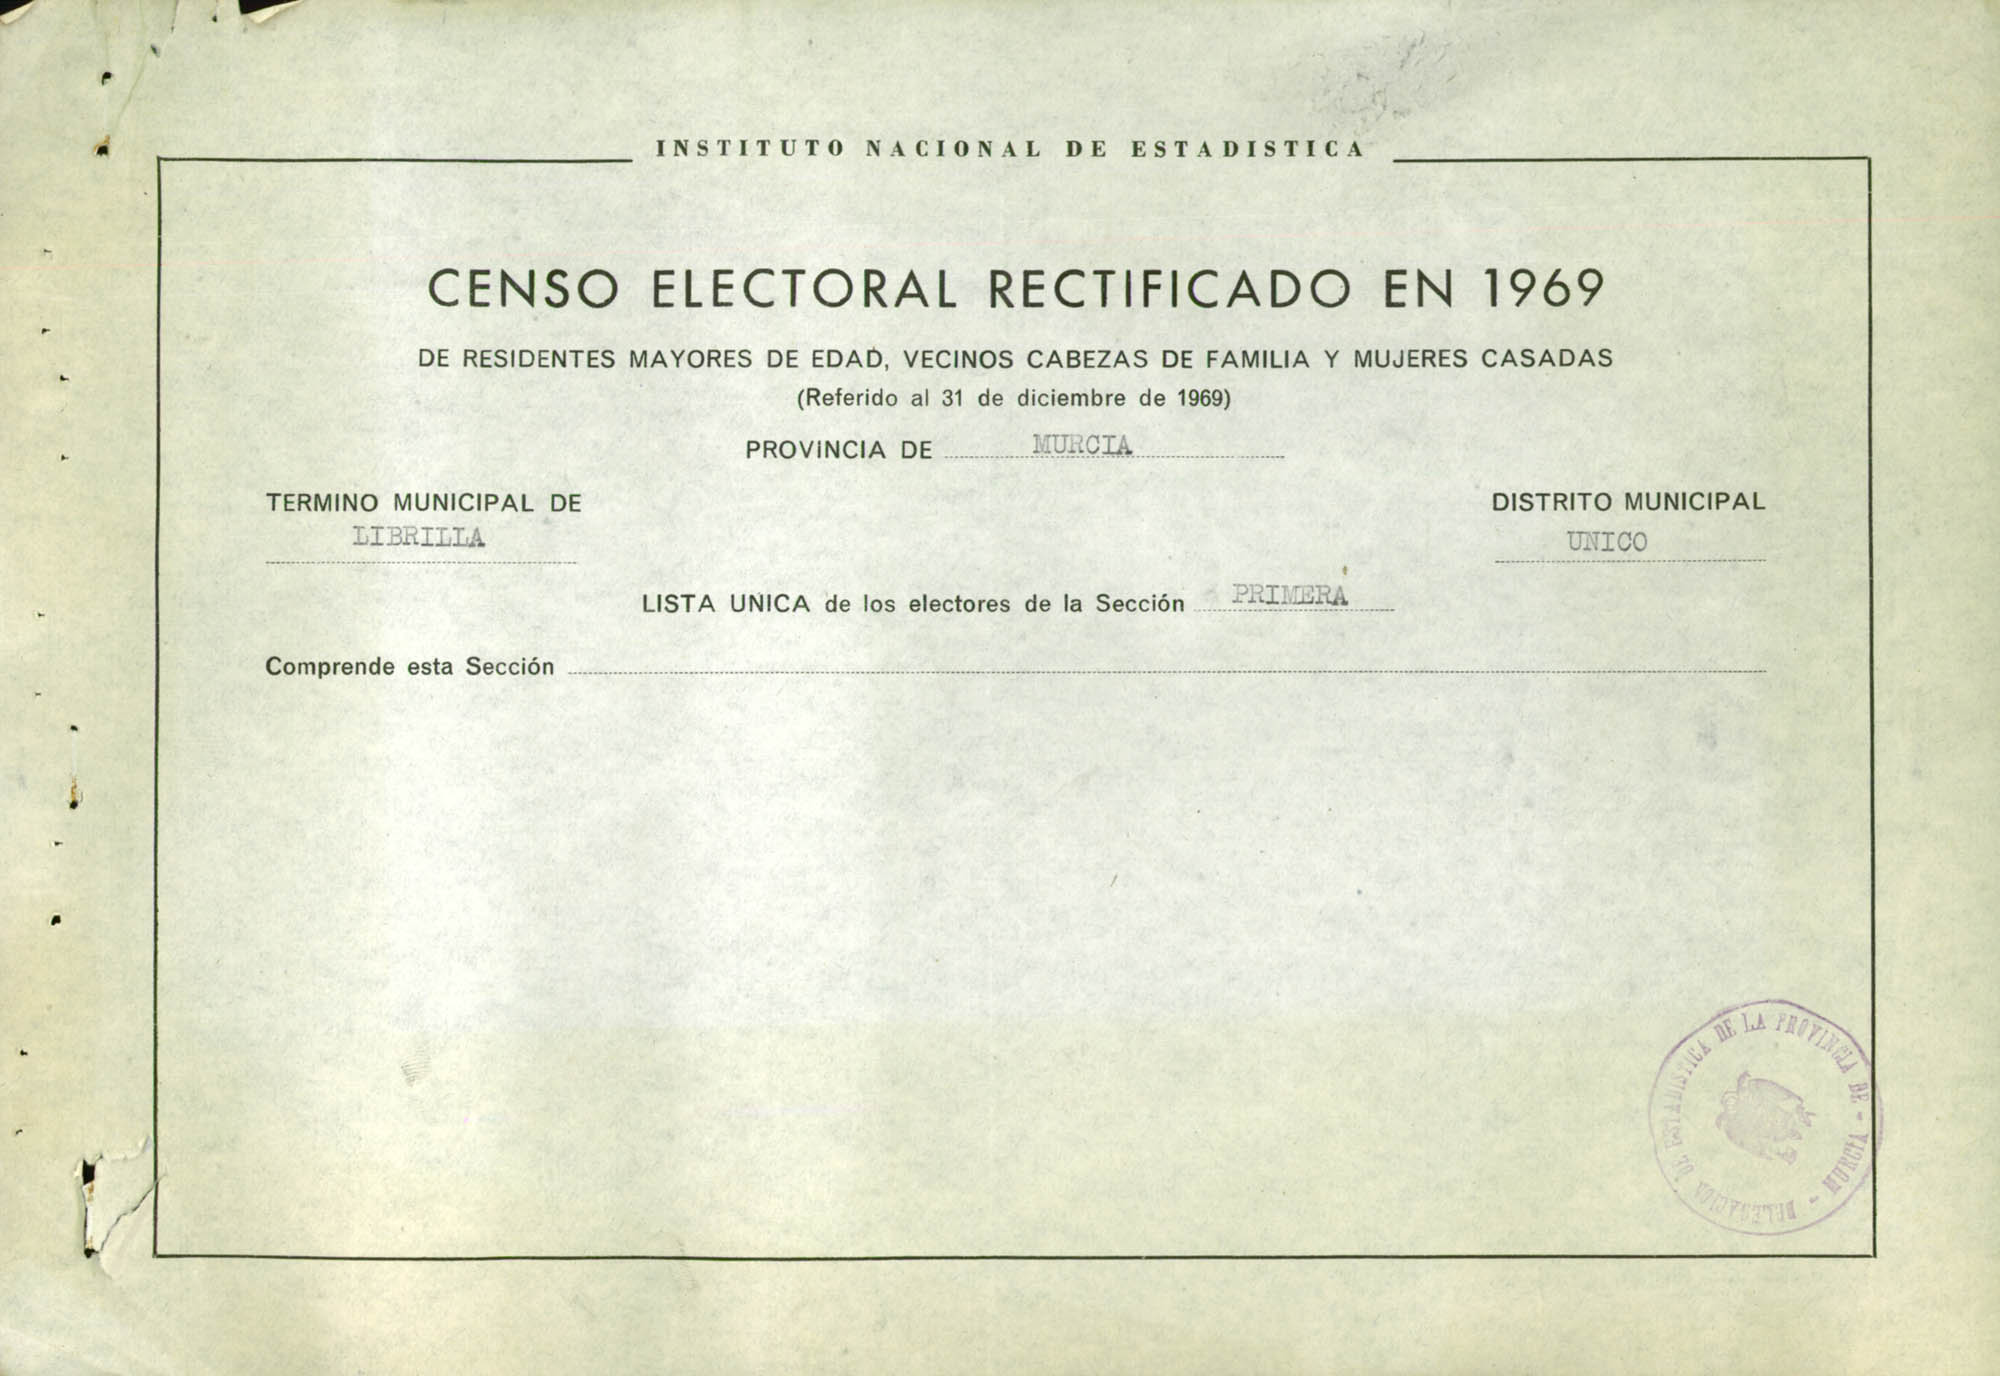 Censo electoral rectificado en 1969: listas definitivas de Librilla, Distrito Único, sección 1ª.